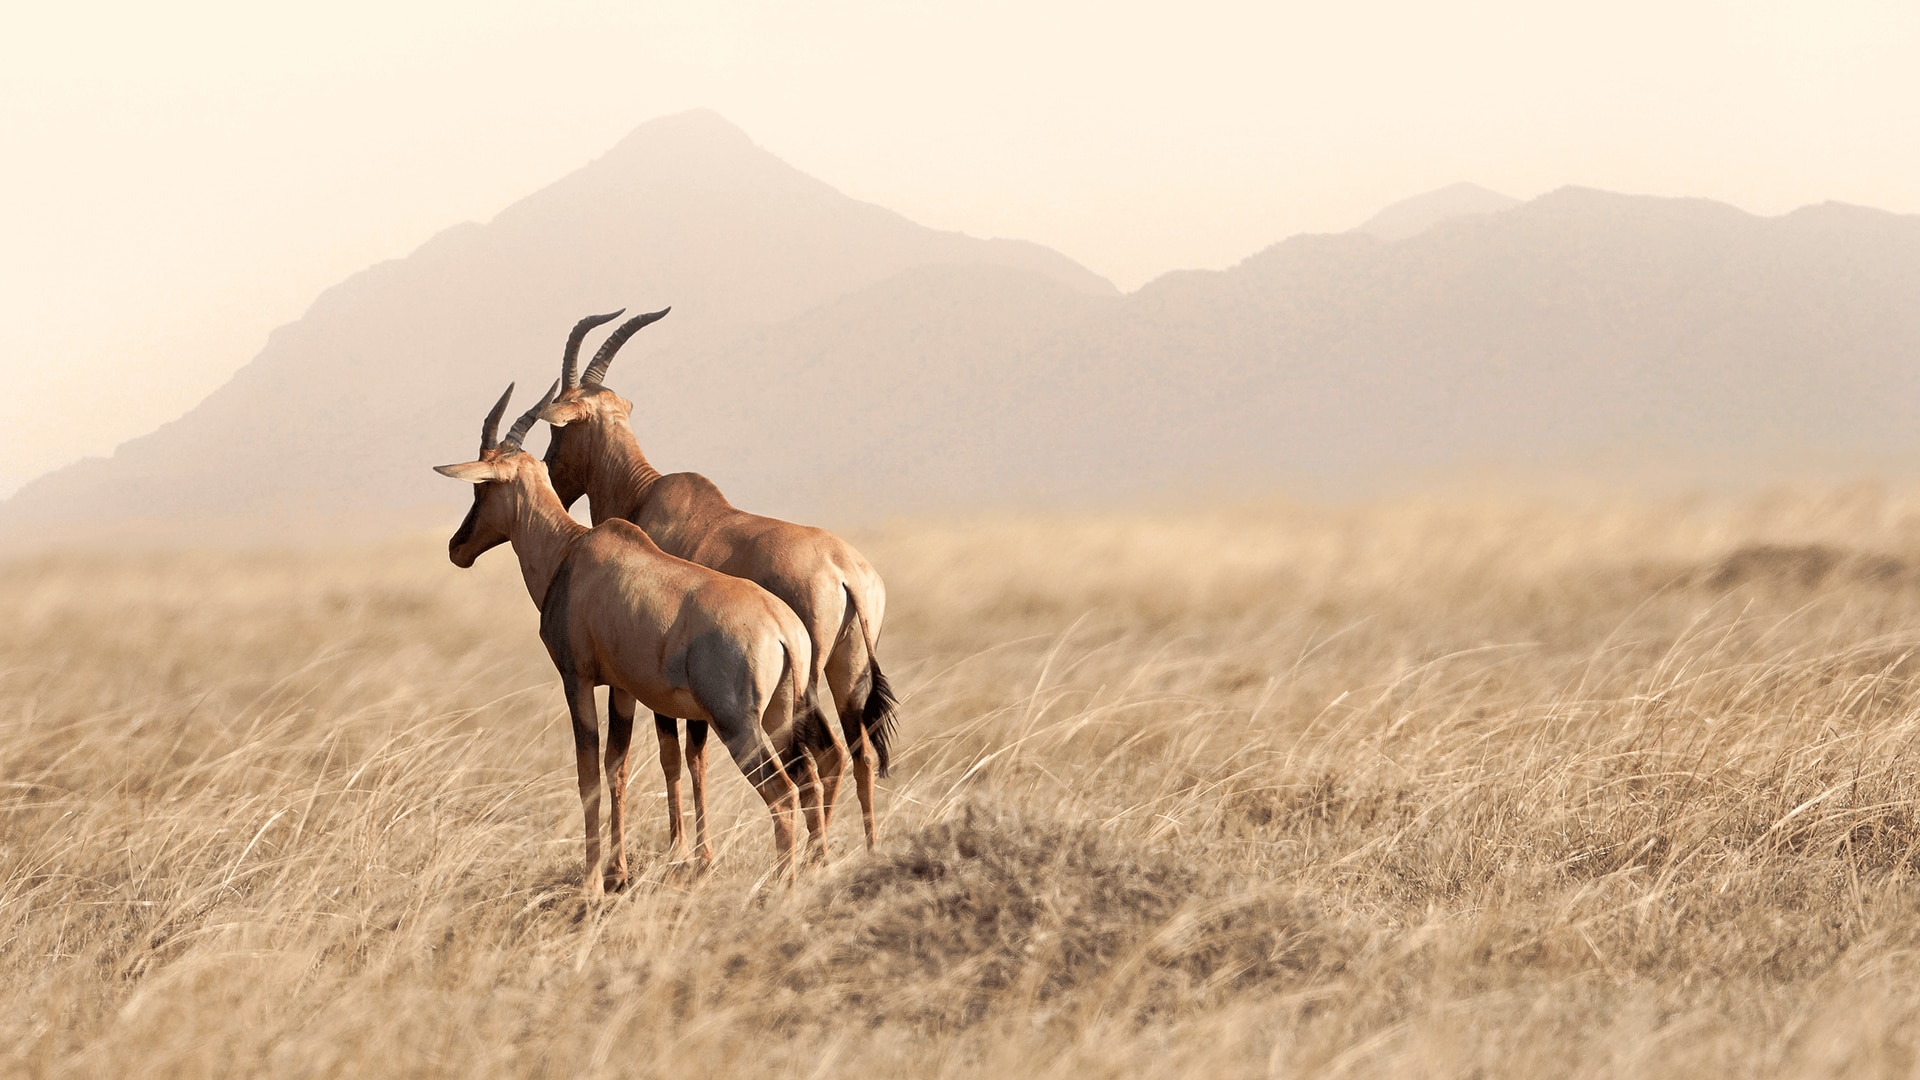 Two topi antelope